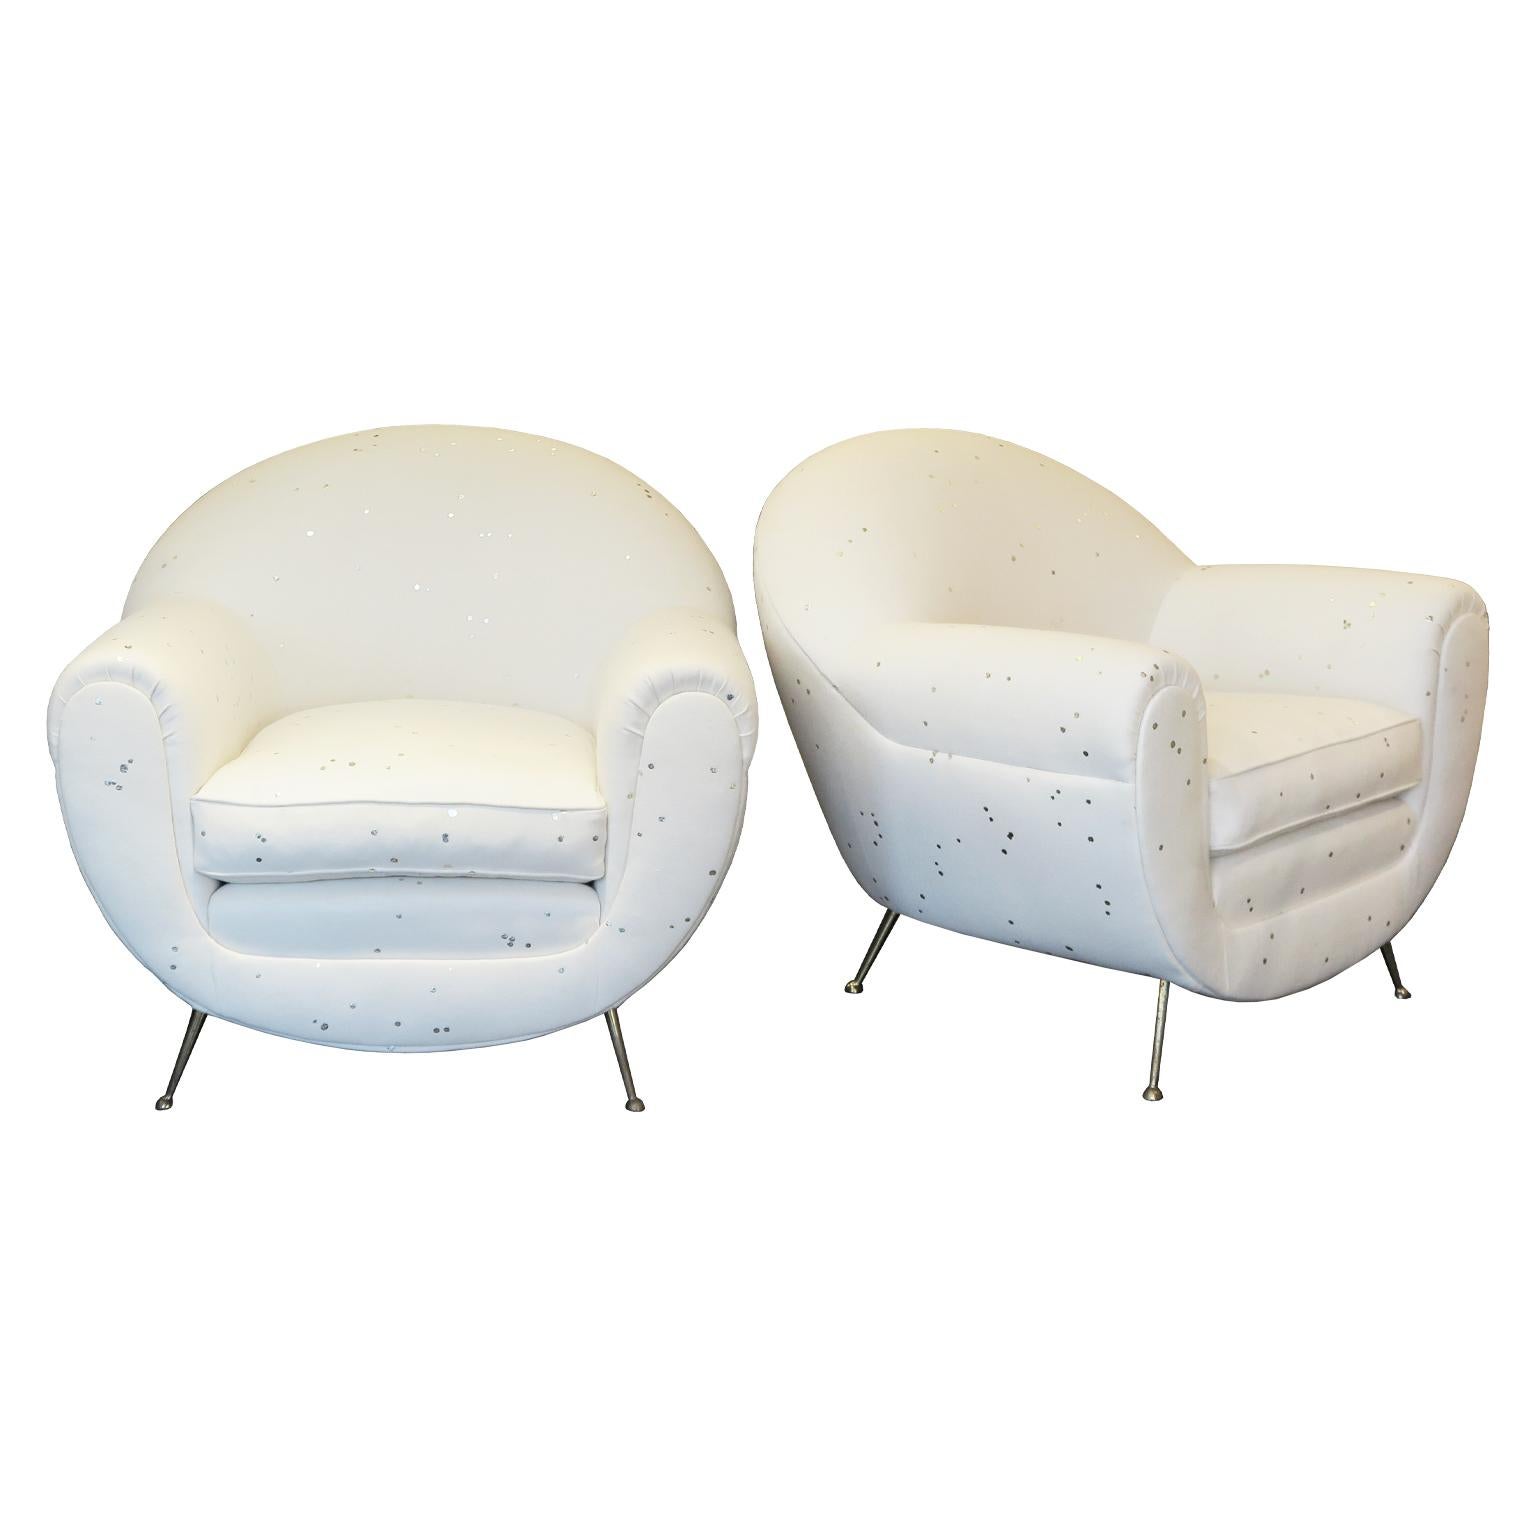 Paar italienische Loungesessel aus der Jahrhundertmitte. Diese stilvollen, neu gepolsterten Sessel haben eine abgerundete Form und sind mit einem Wollstoff in einem sanften Cremeton mit weiß-goldenen Punkten umrandet. Der Stuhl hat spitz zulaufende